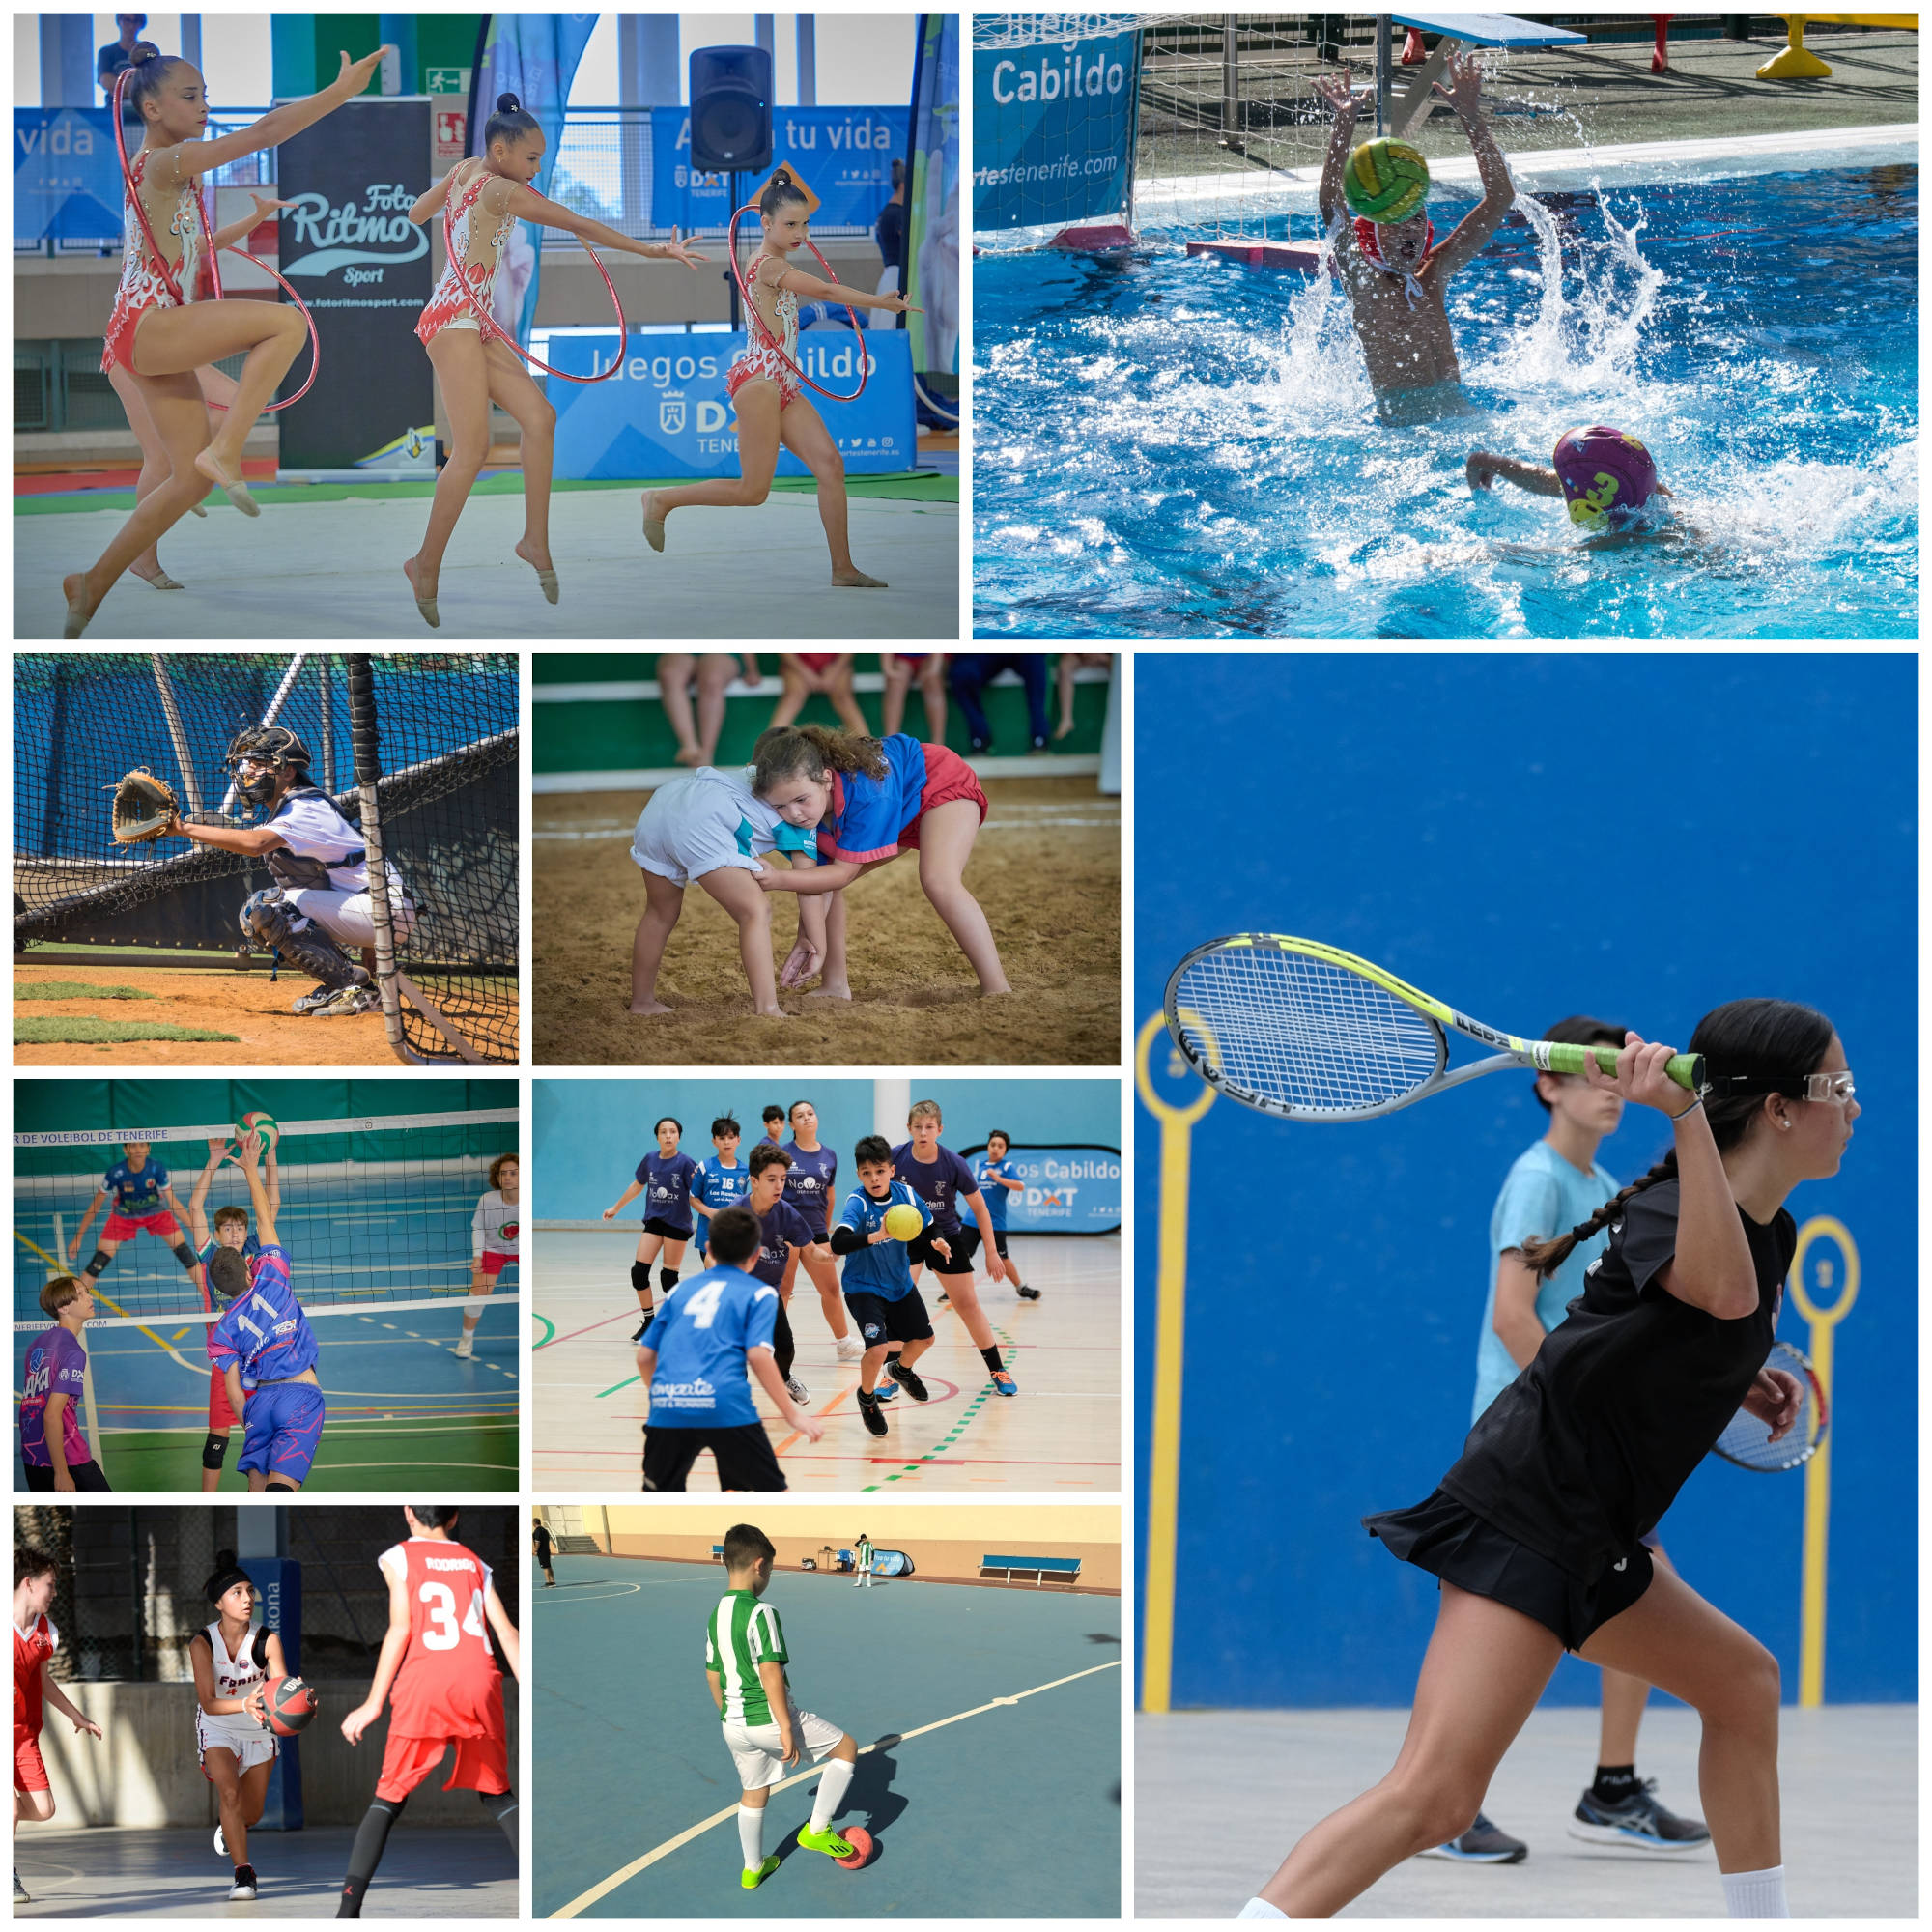 Los Juegos Cabildo despiden el mes de abril con nueve propuestas deportivas repartidas por toda la Isla